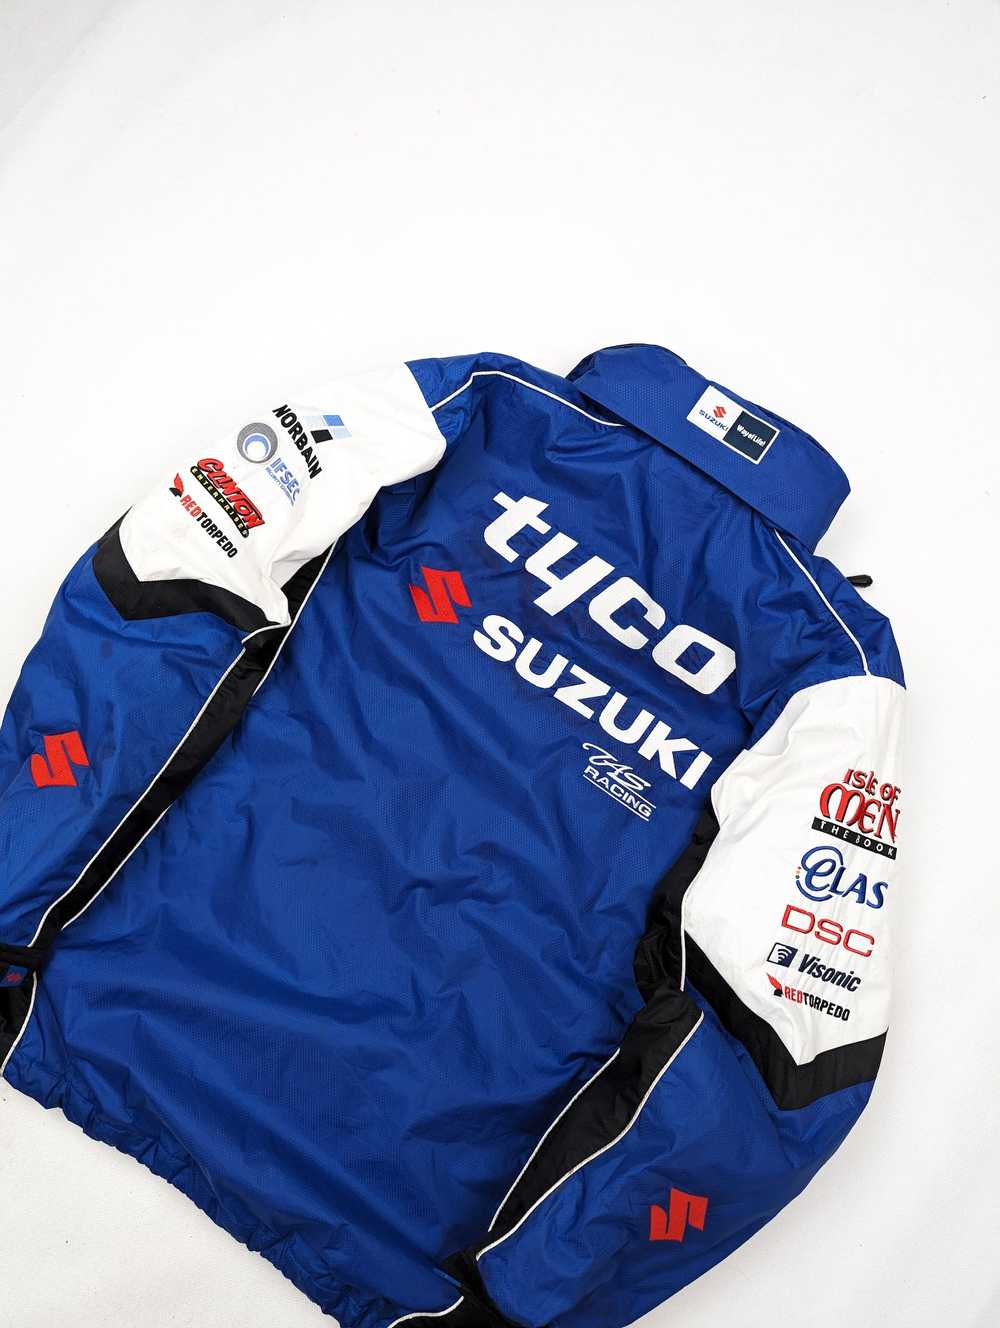 Racing Suzuki tyco rare racing winter jacket L - image 7